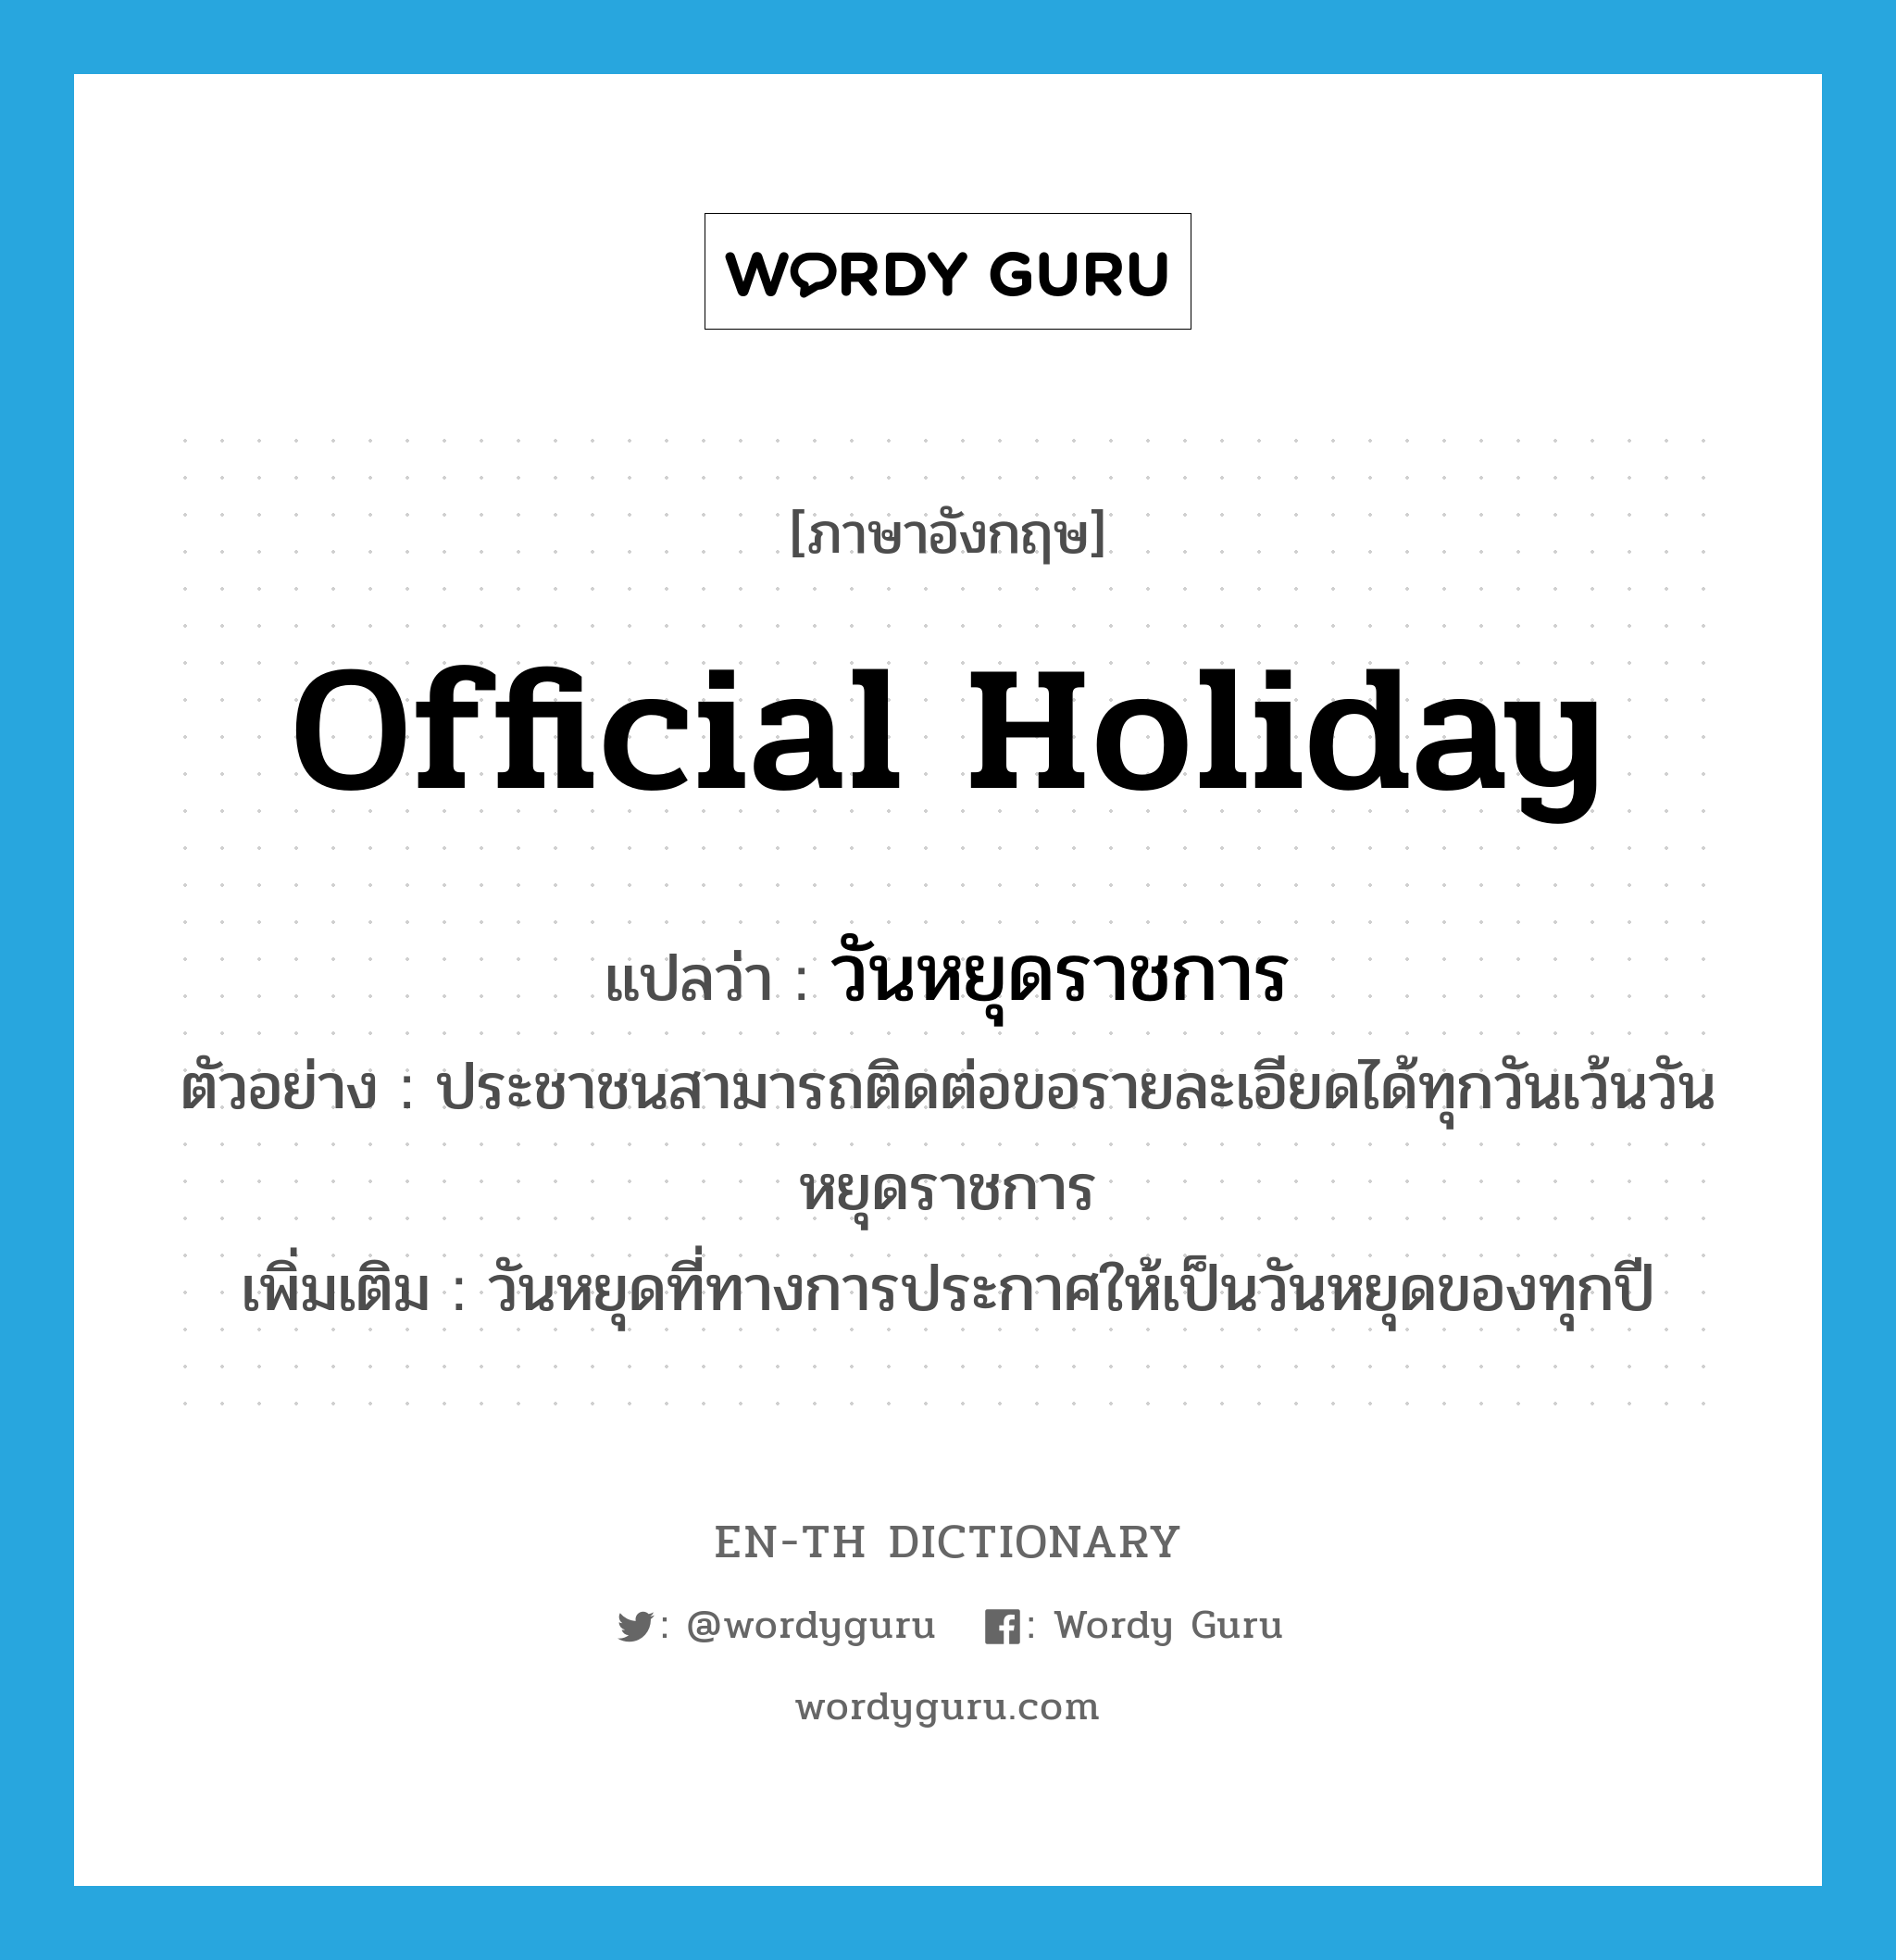 Official Holiday แปลว่า? | Wordy Guru